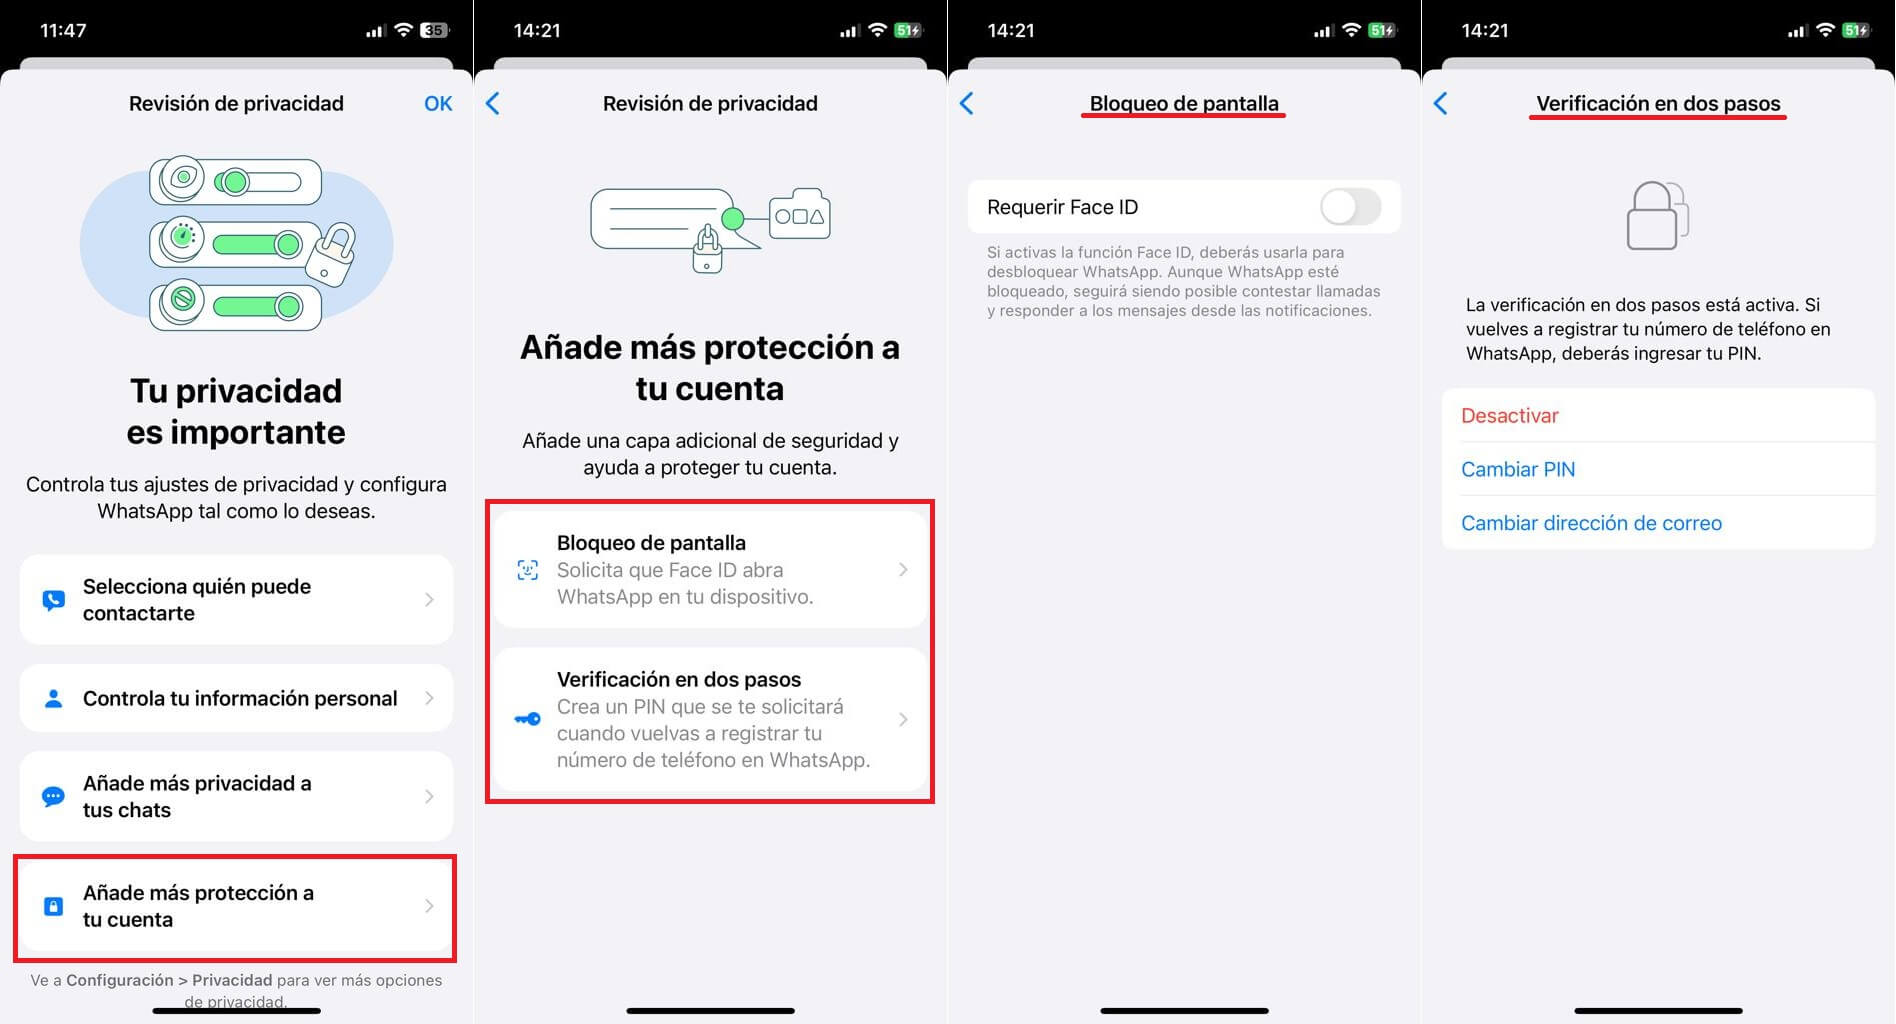 whatsapp permite realizar una revision de privacidad